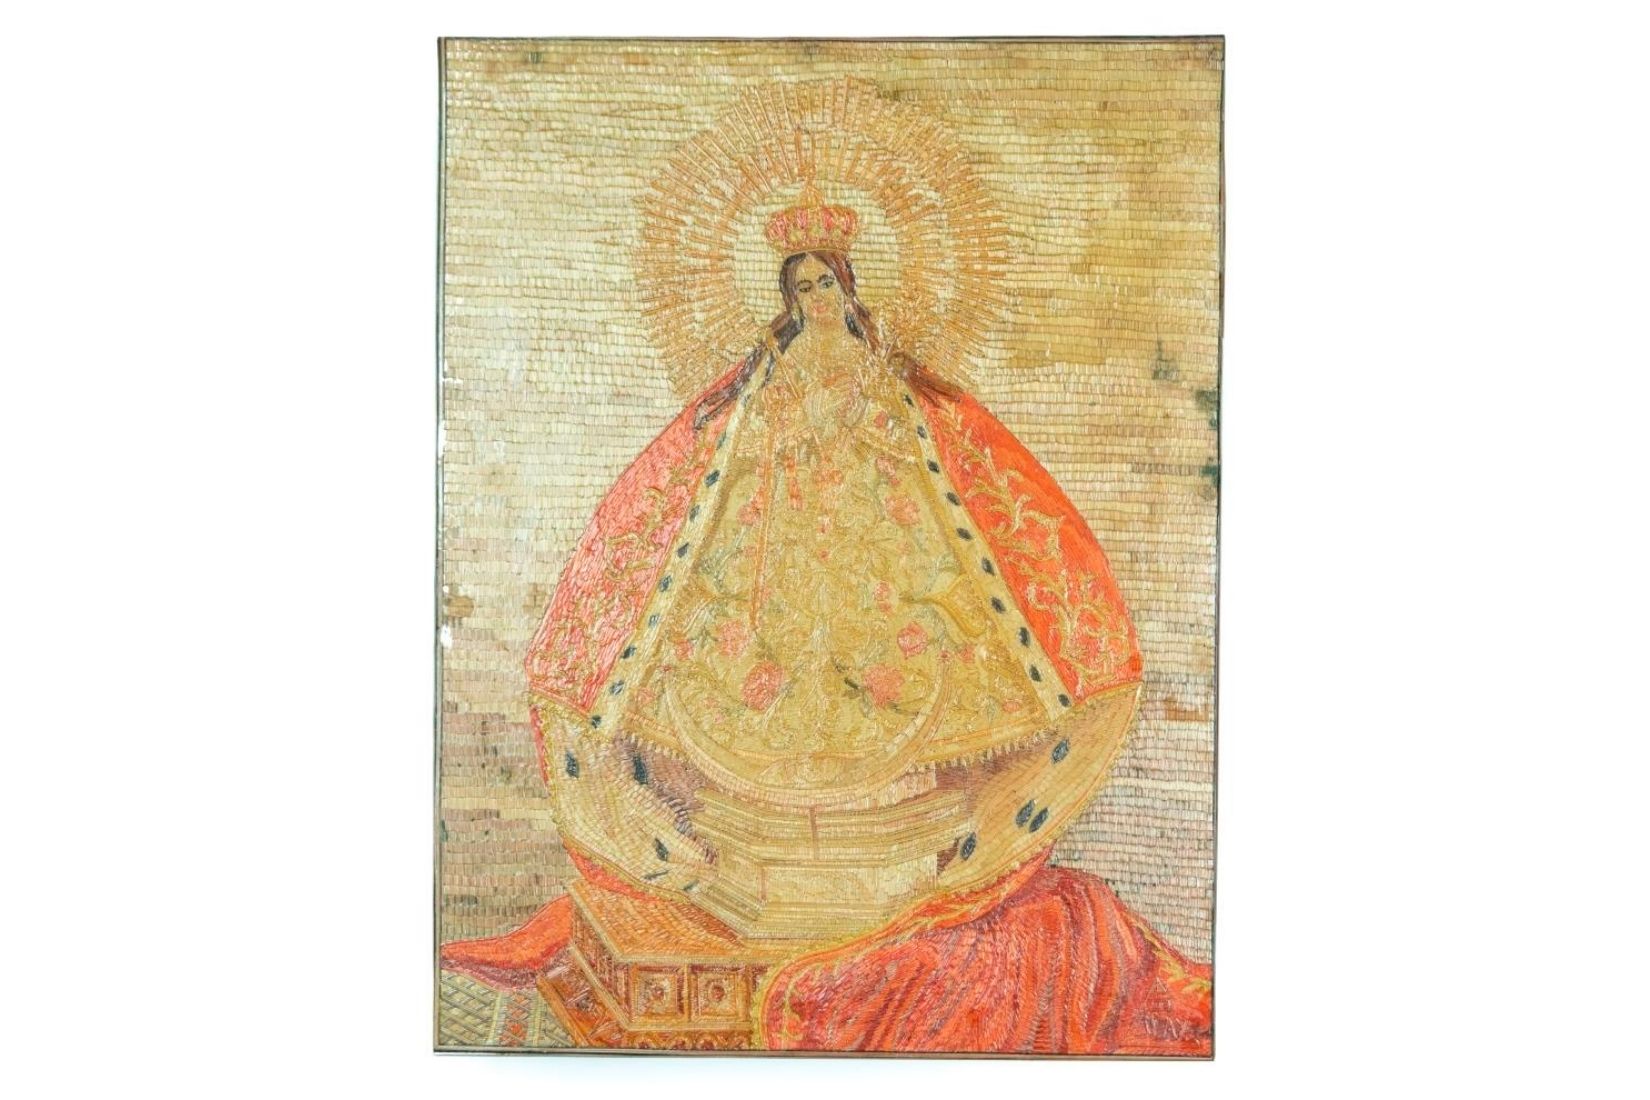 Virgen de la Salud. Popotillo recortado, pintado y pegado. Artesano Guillermo Olay. Tlalpujahua, Mich. Col. AmigosMAP. (Foto: EKV).